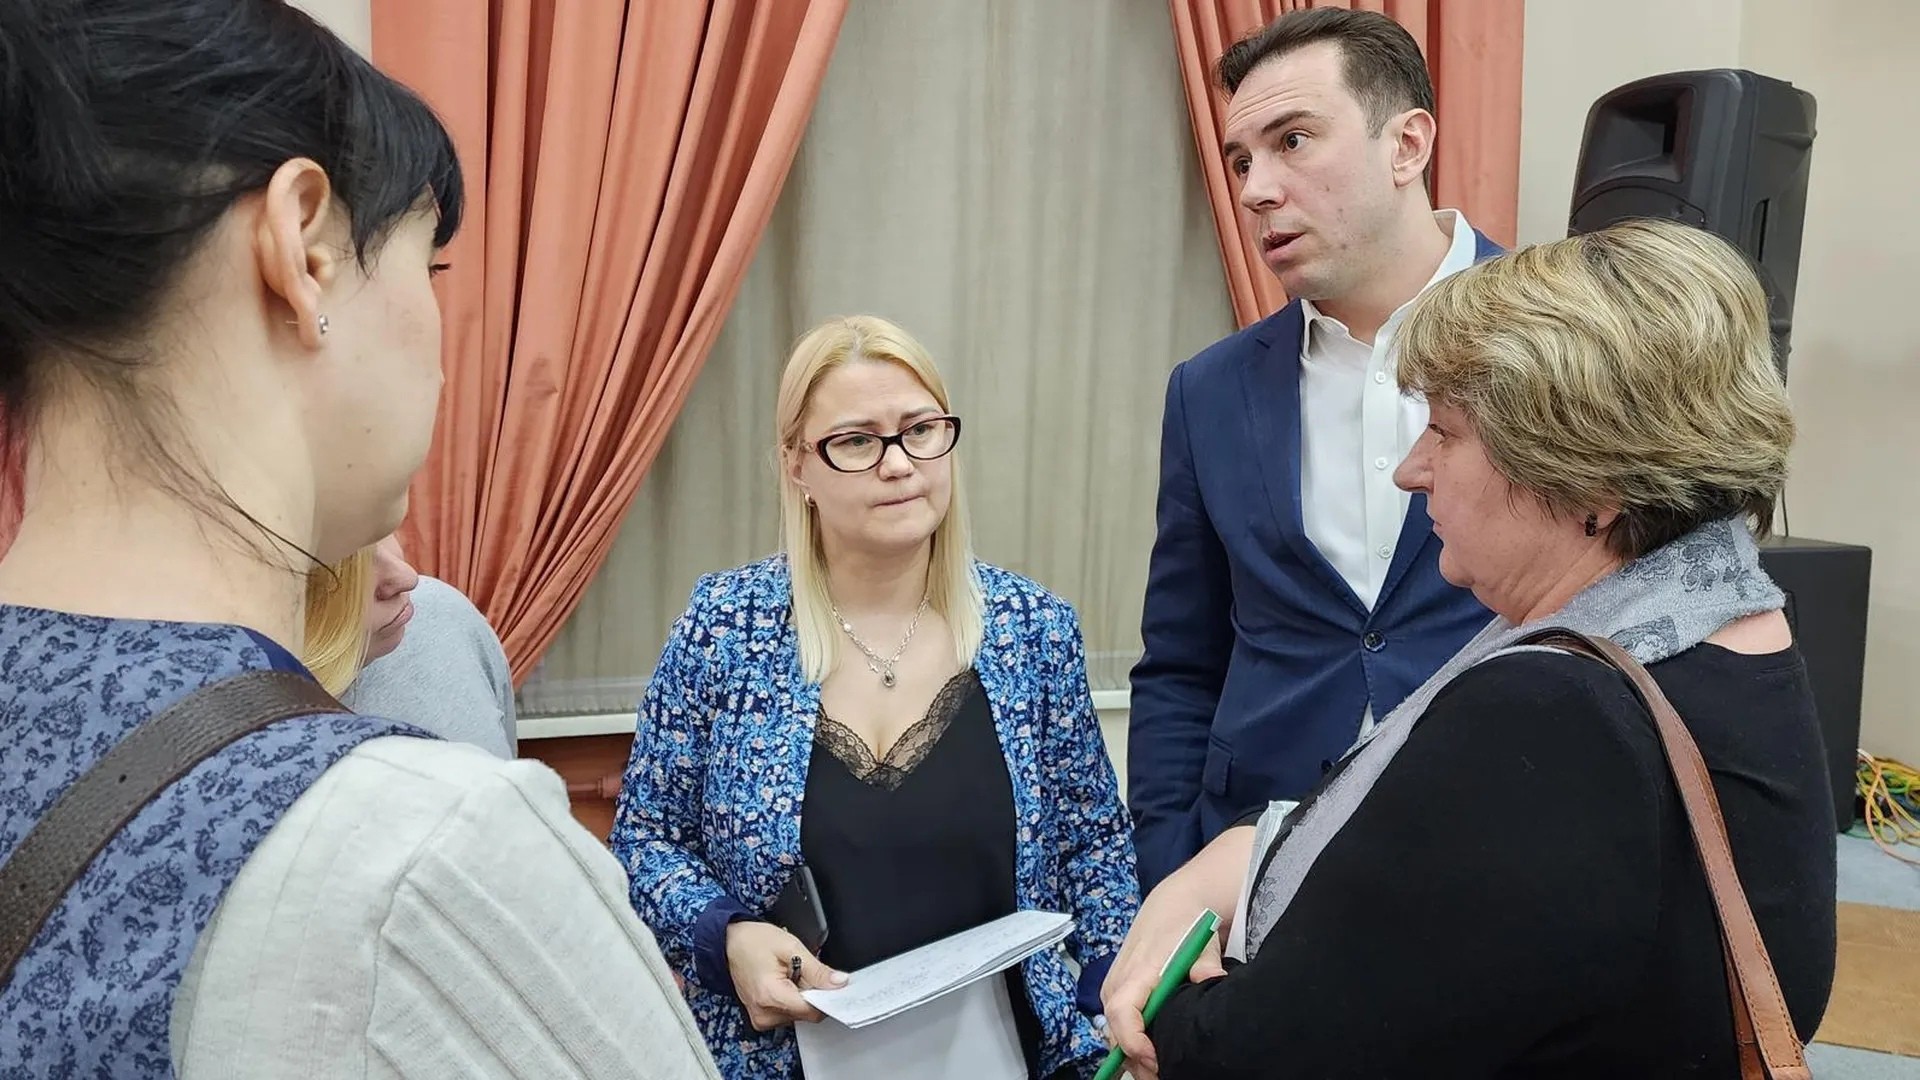 Обучение информаторов перед президентскими выборами провели в Раменском